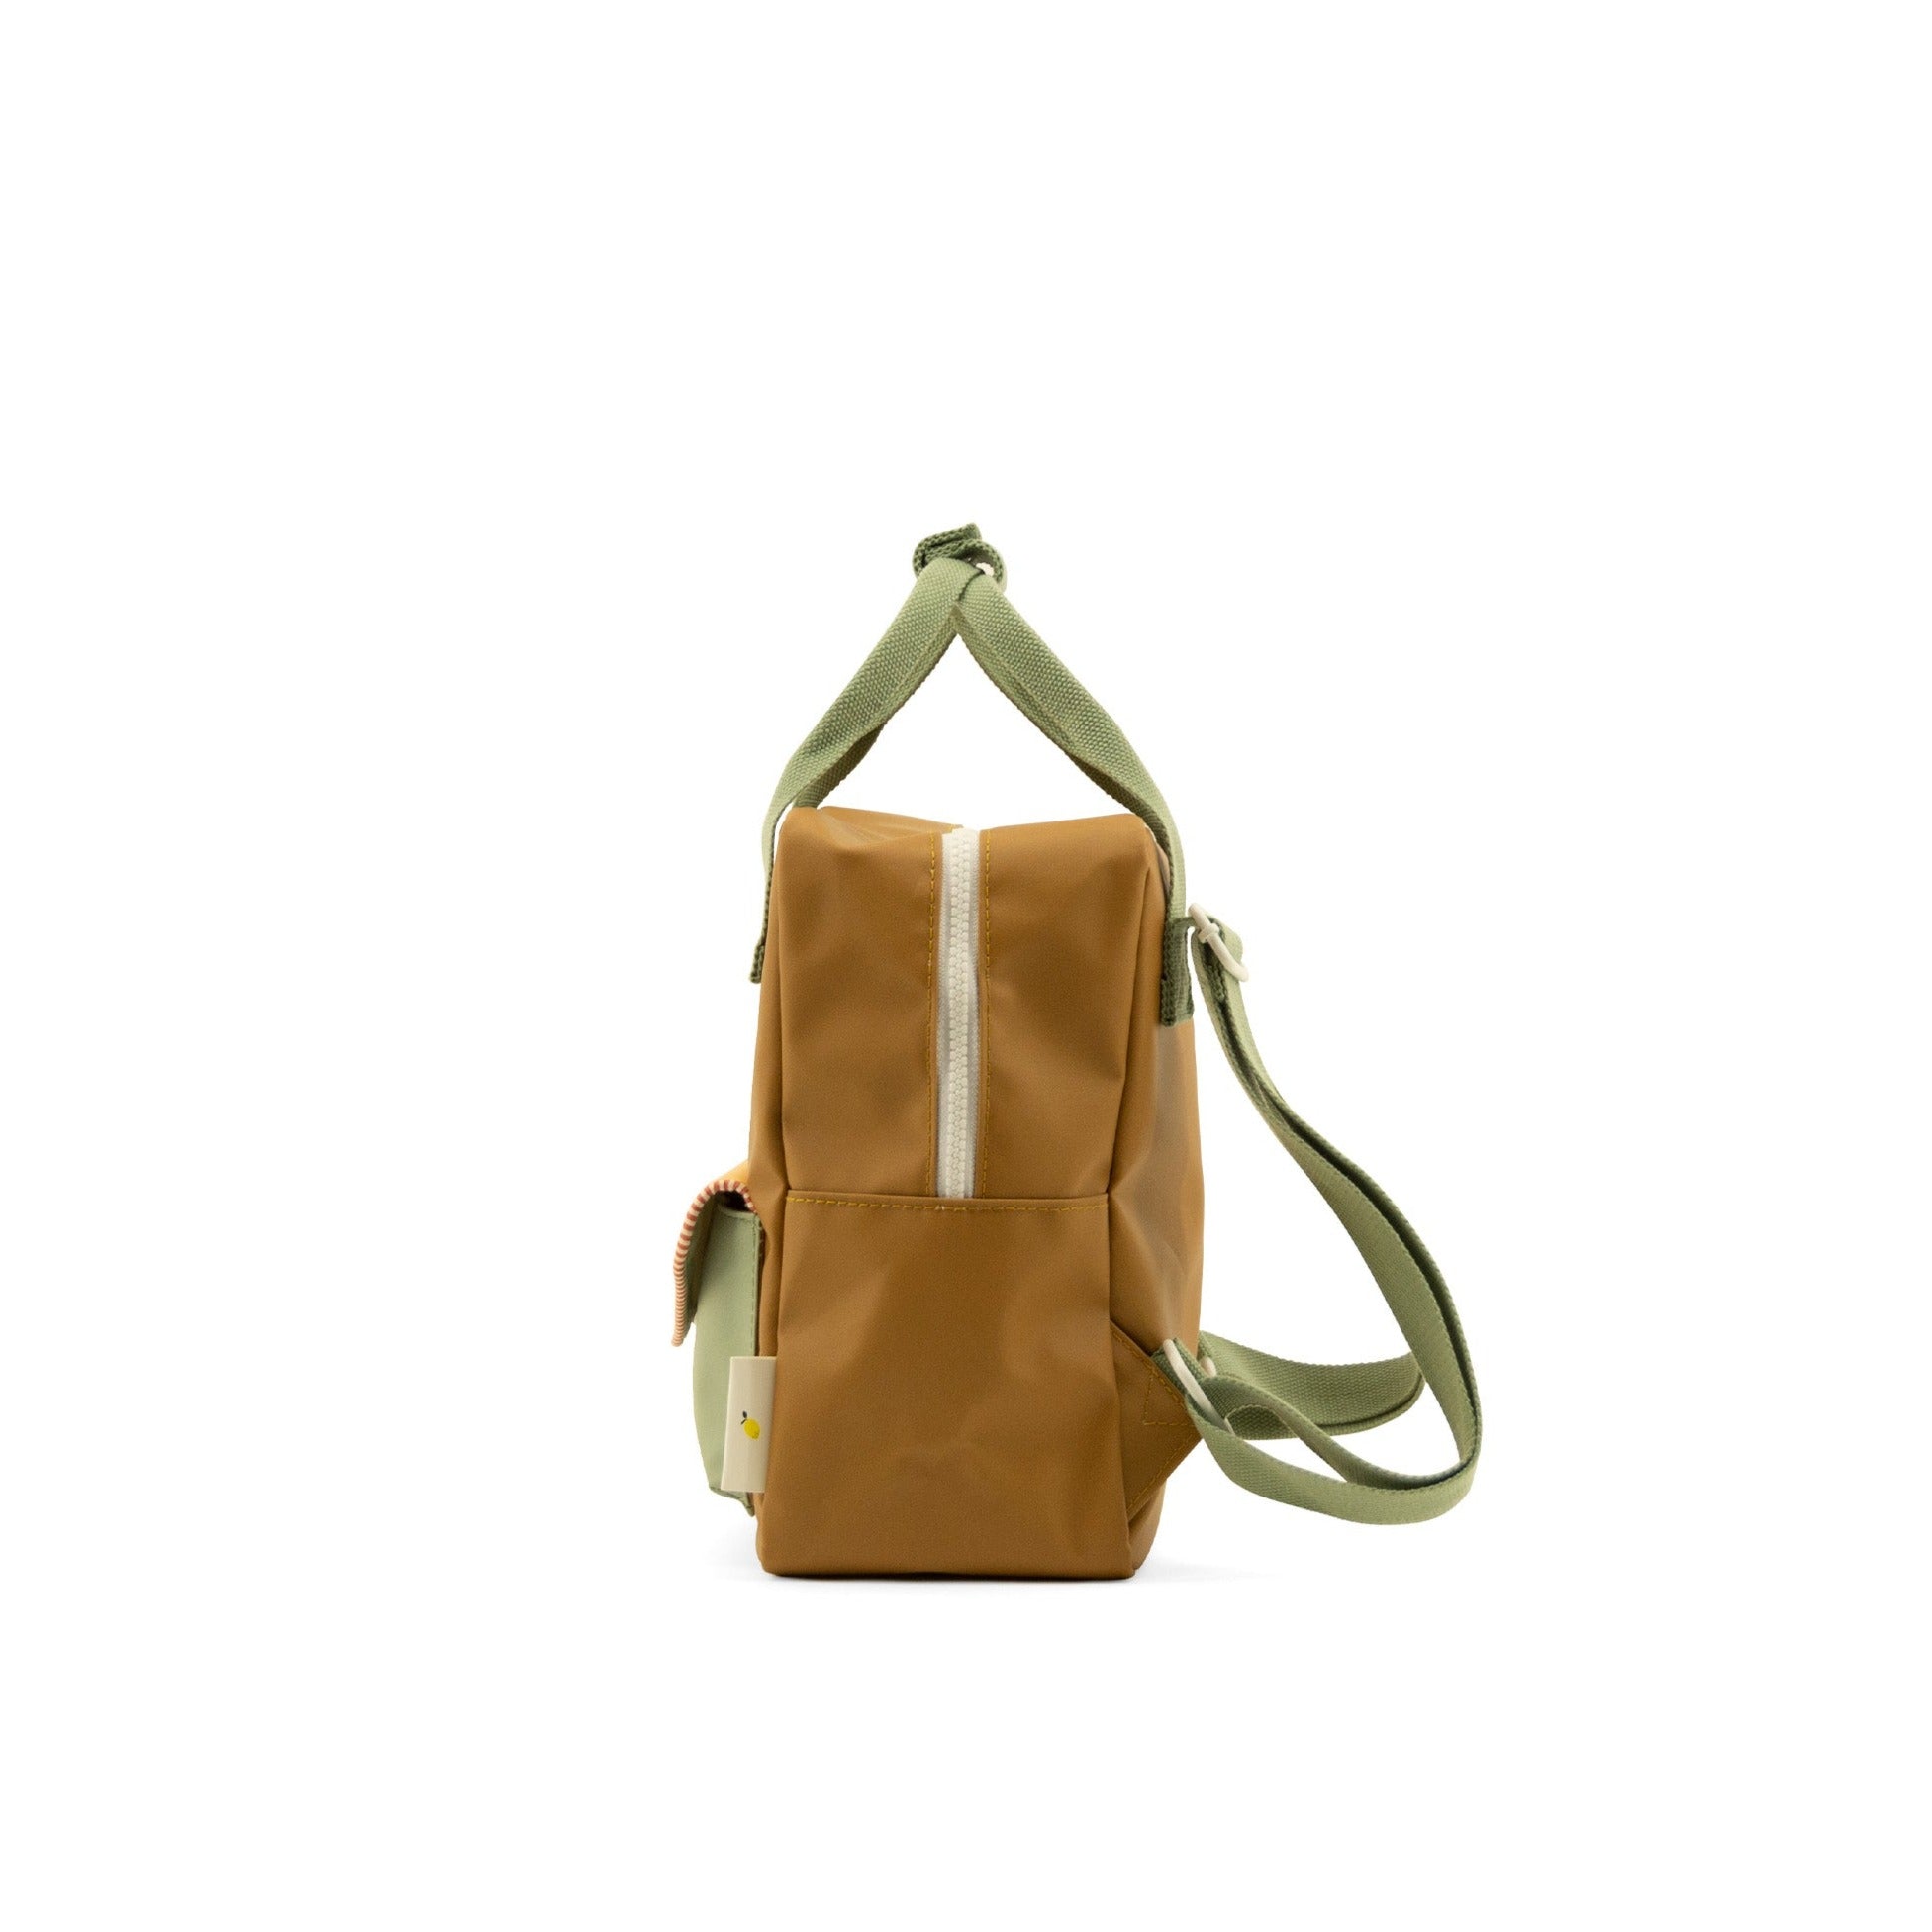 Sticky Lemon Envelope Backpack Small - Khaki Green